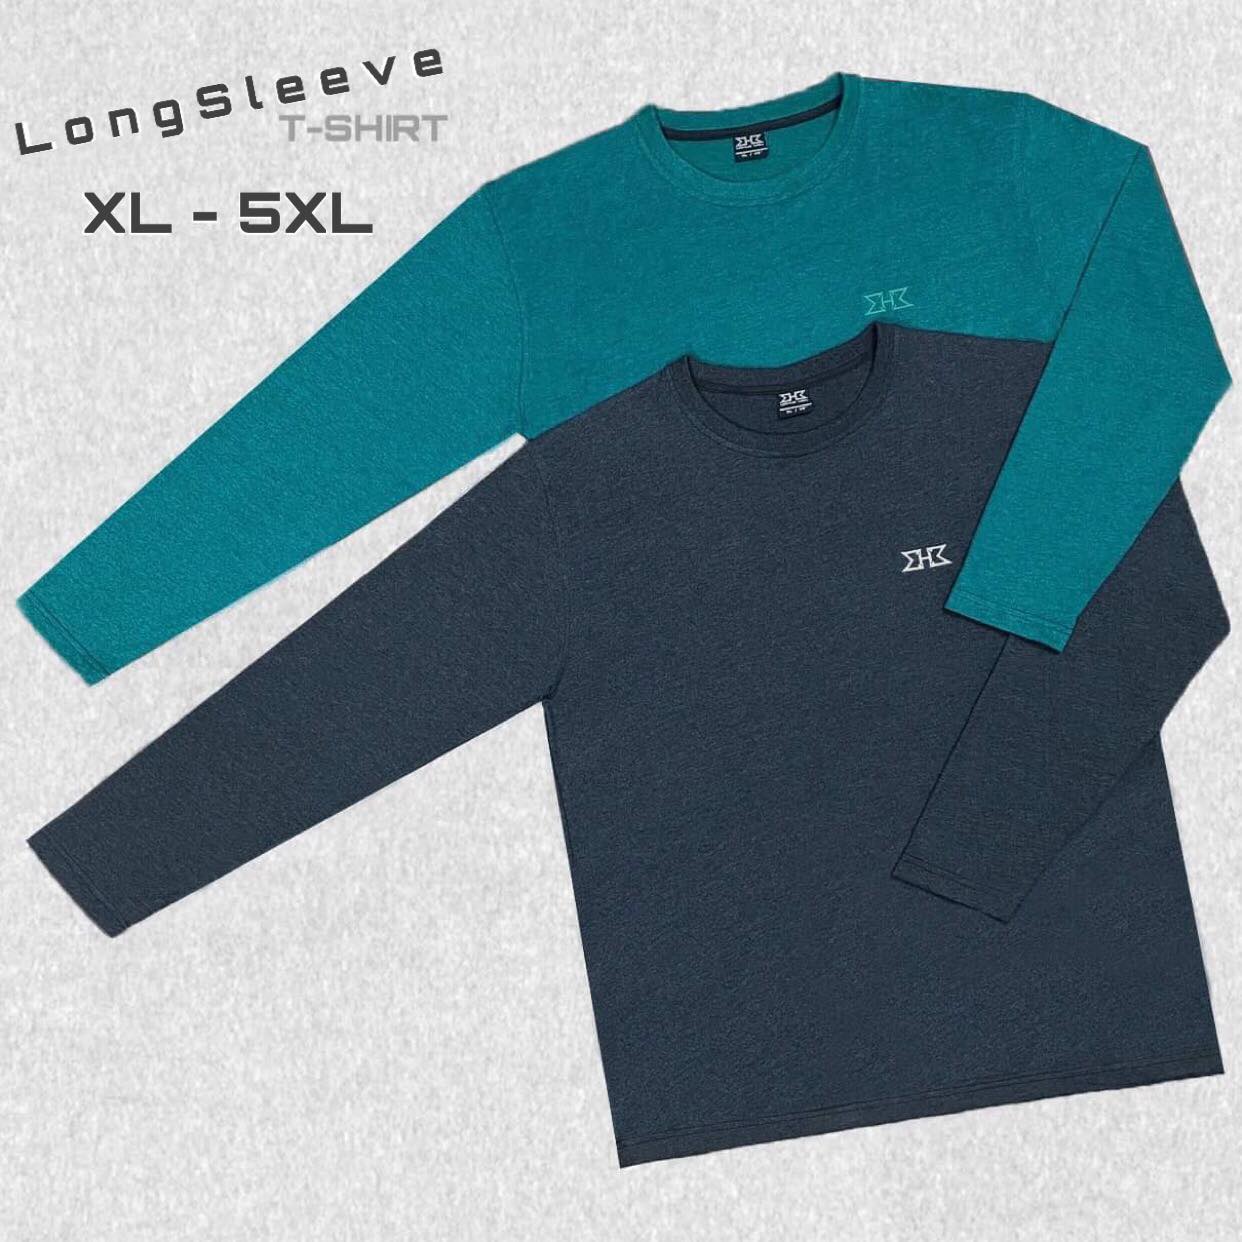 เสื้อยืดแขนยาว สีพื้น XL - 5XL